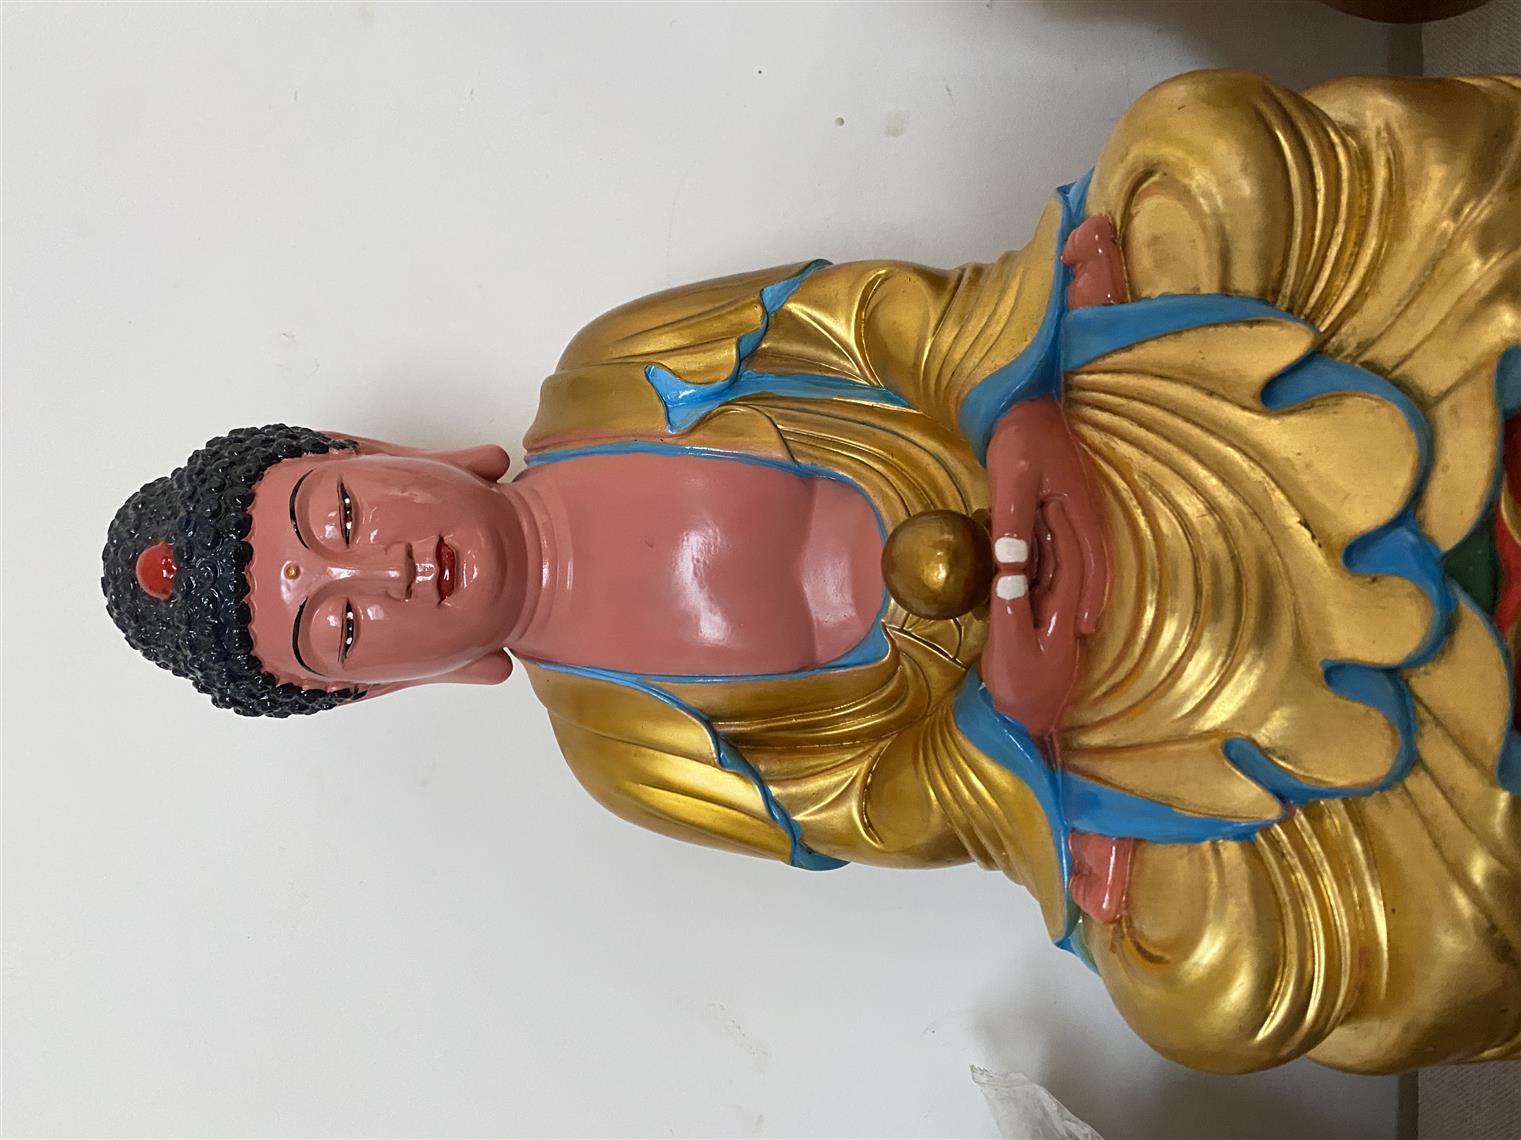 宣城青铜器修复流程 南京美瓷工艺品有限公司